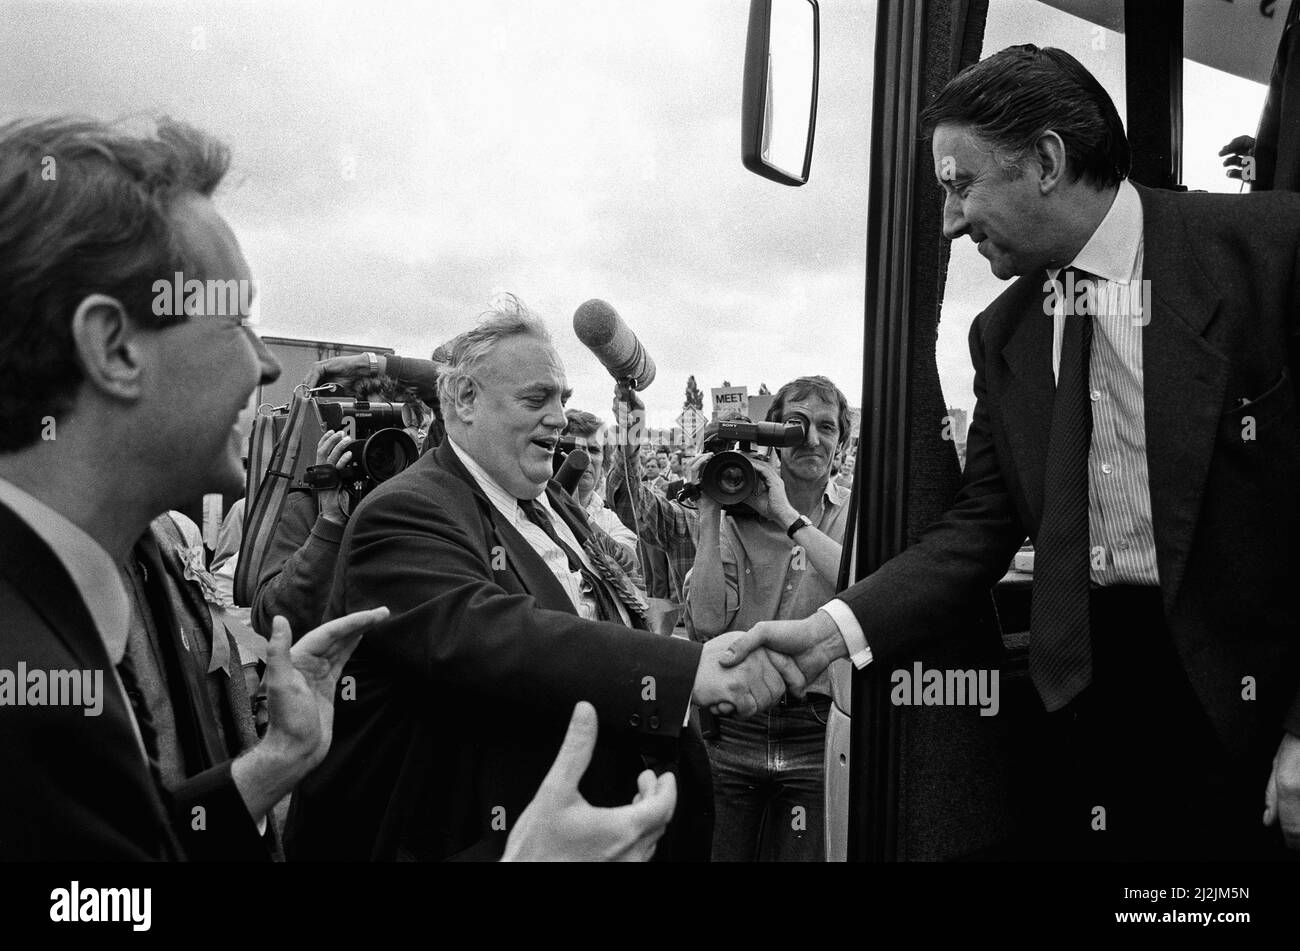 Cyril Smith begrüßt den liberalen Führer David Steel, als der SDP-Kampfbus der Liberalen Allianz während der Parlamentswahlen 1987 in Rochdale eintrifft. 31. Mai 1987 Stockfoto